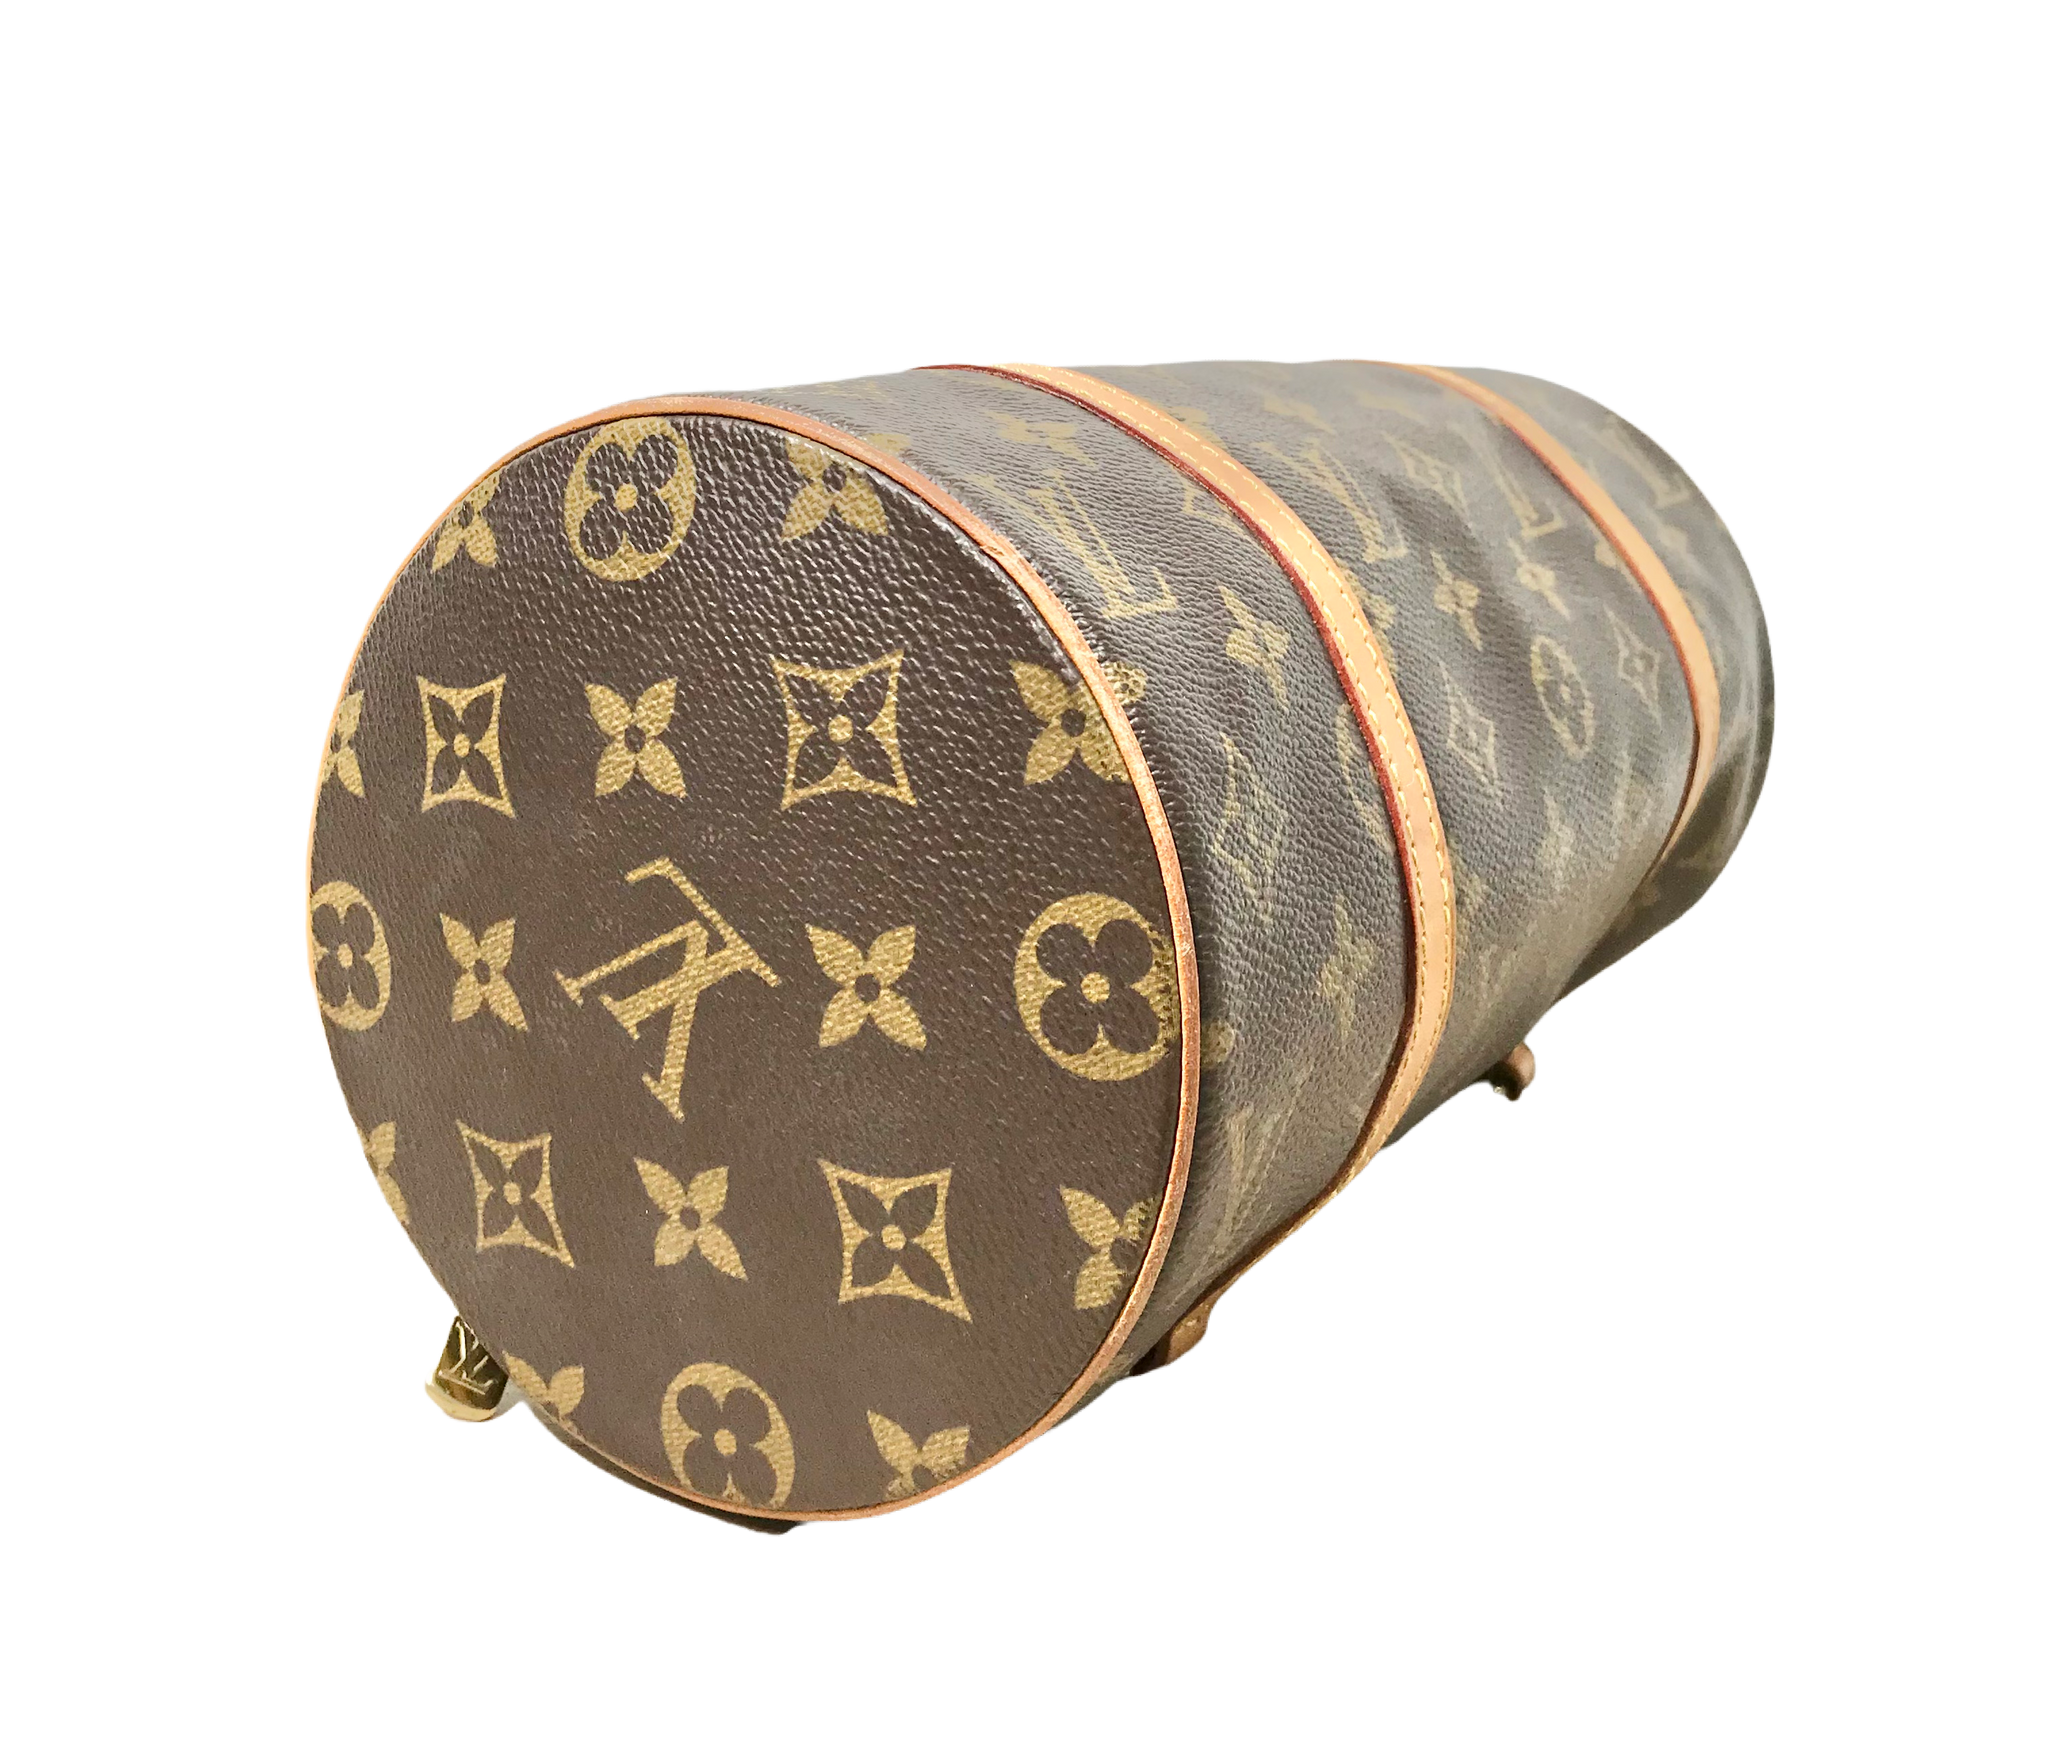 Authentic Louis Vuitton Papillon 26 Monogram M51366 Barrel Bag